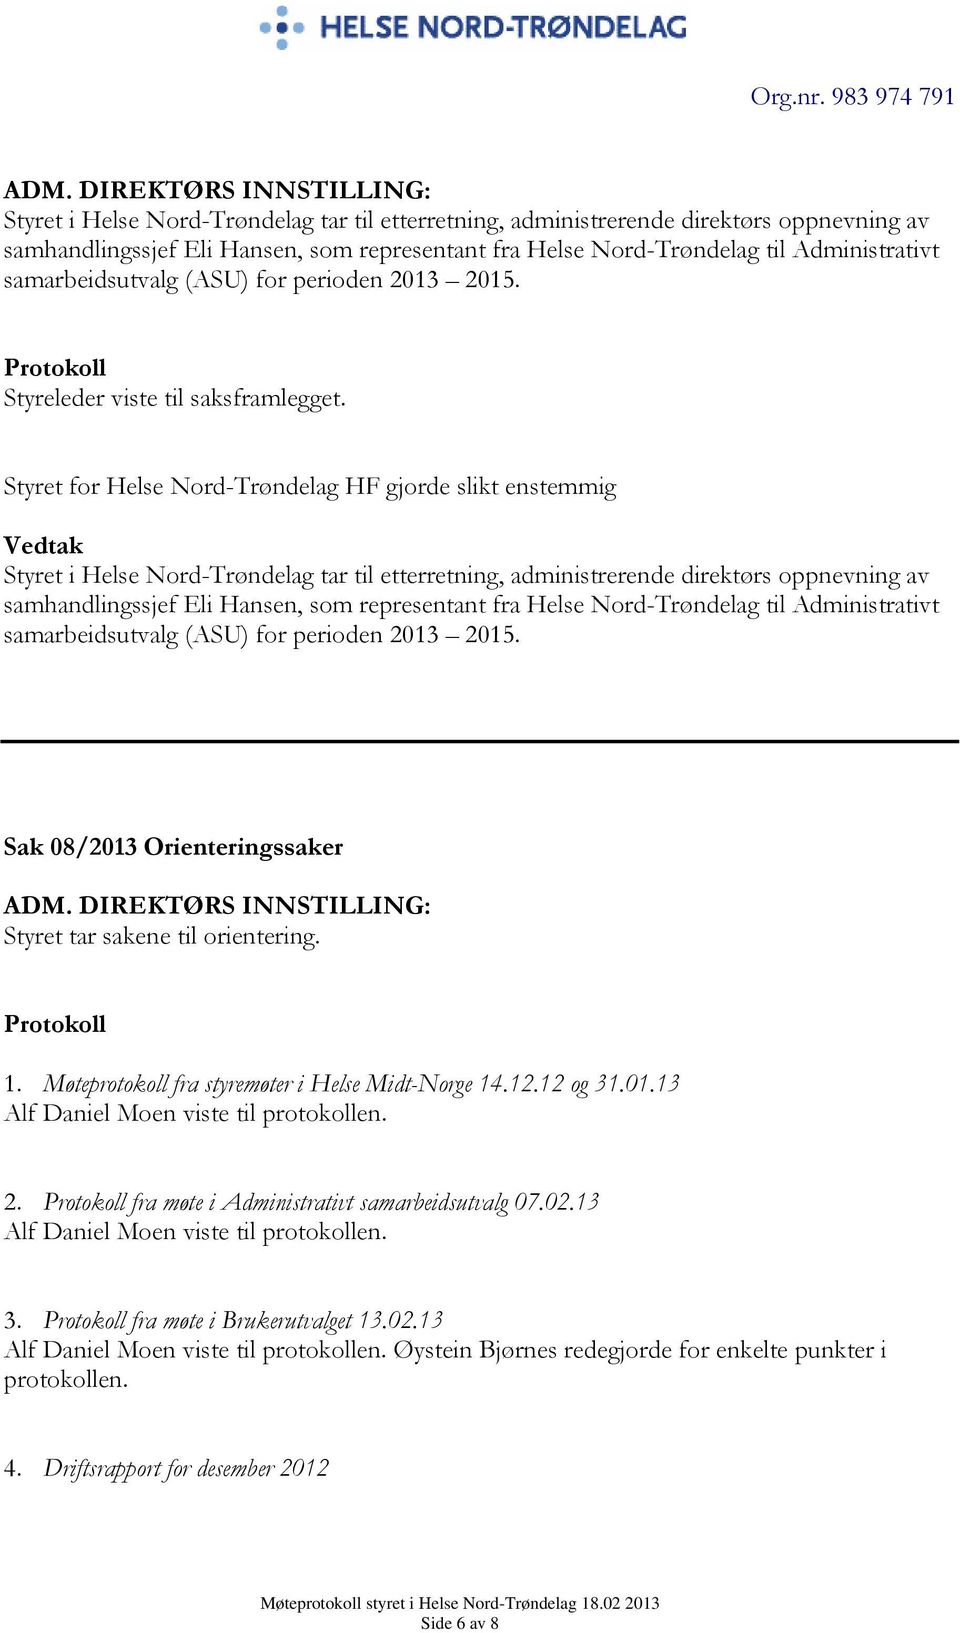 Møteprotokoll fra styremøter i Helse Midt-Norge 14.12.12 og 31.01.13 Alf Daniel Moen viste til protokollen. 2. fra møte i Administrativt samarbeidsutvalg 07.02.